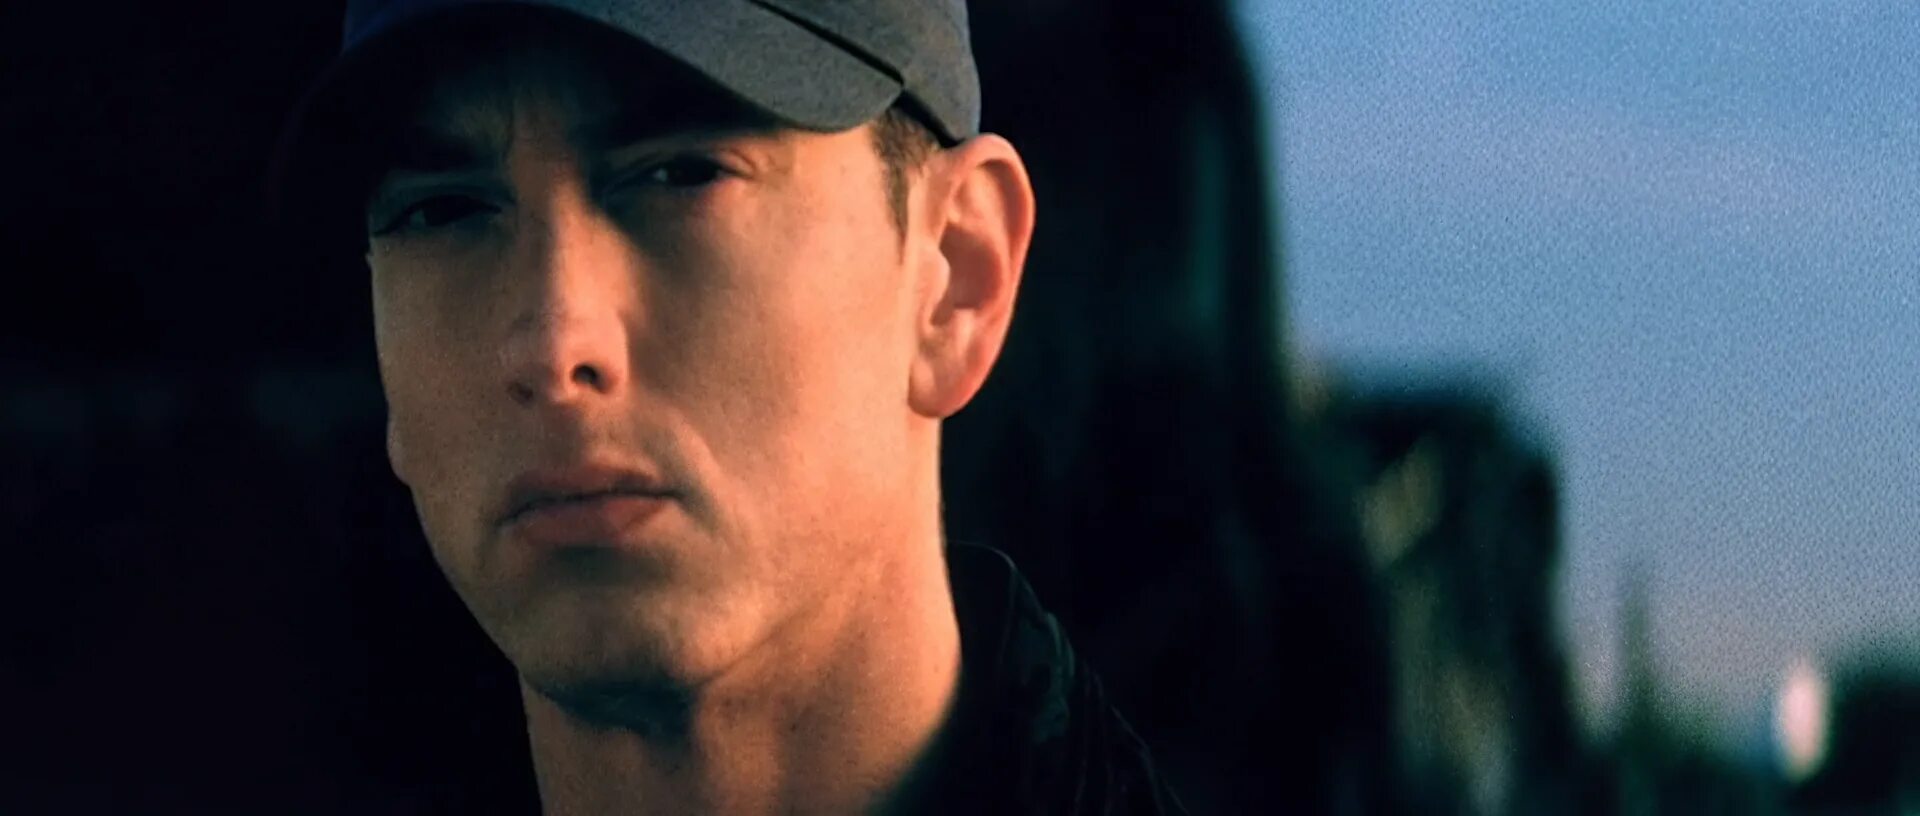 Eminem 2009 beautiful. Эминем 1991. Эминем 2009 в клипе. Эминем клипы. Клипы beautiful